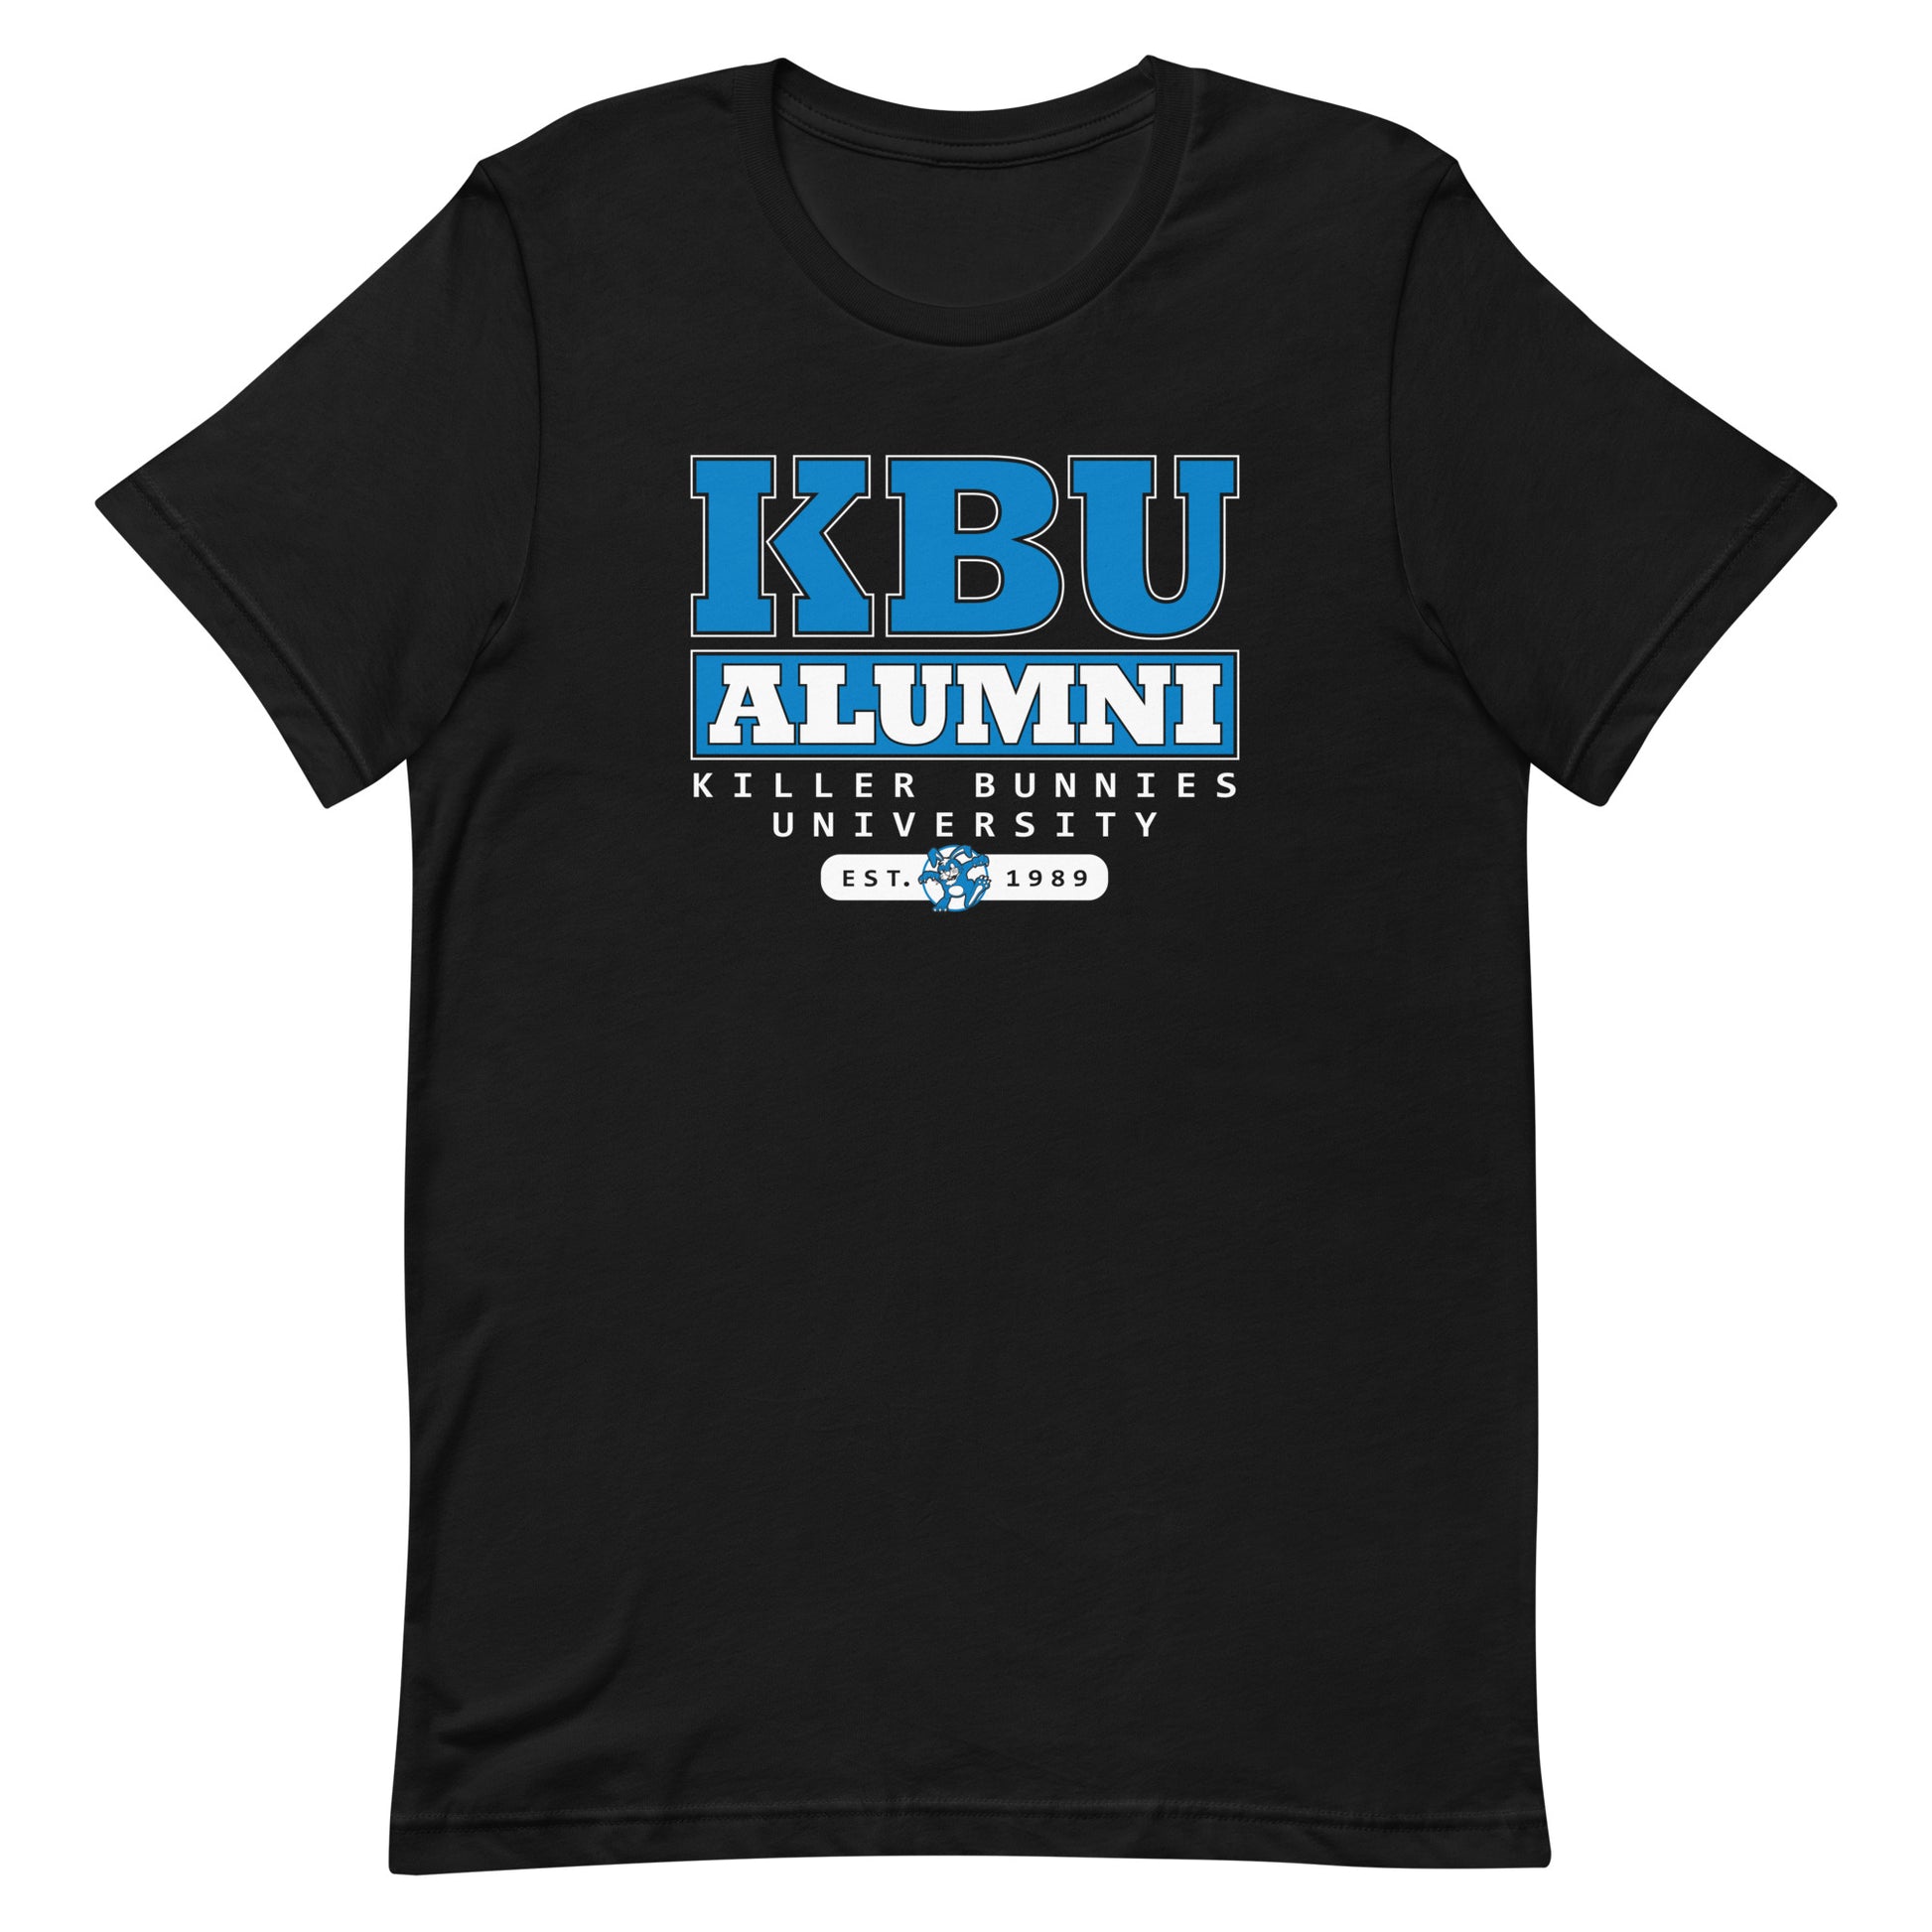 Killer Bunnies Alumni Unisex T-Shirt - Black